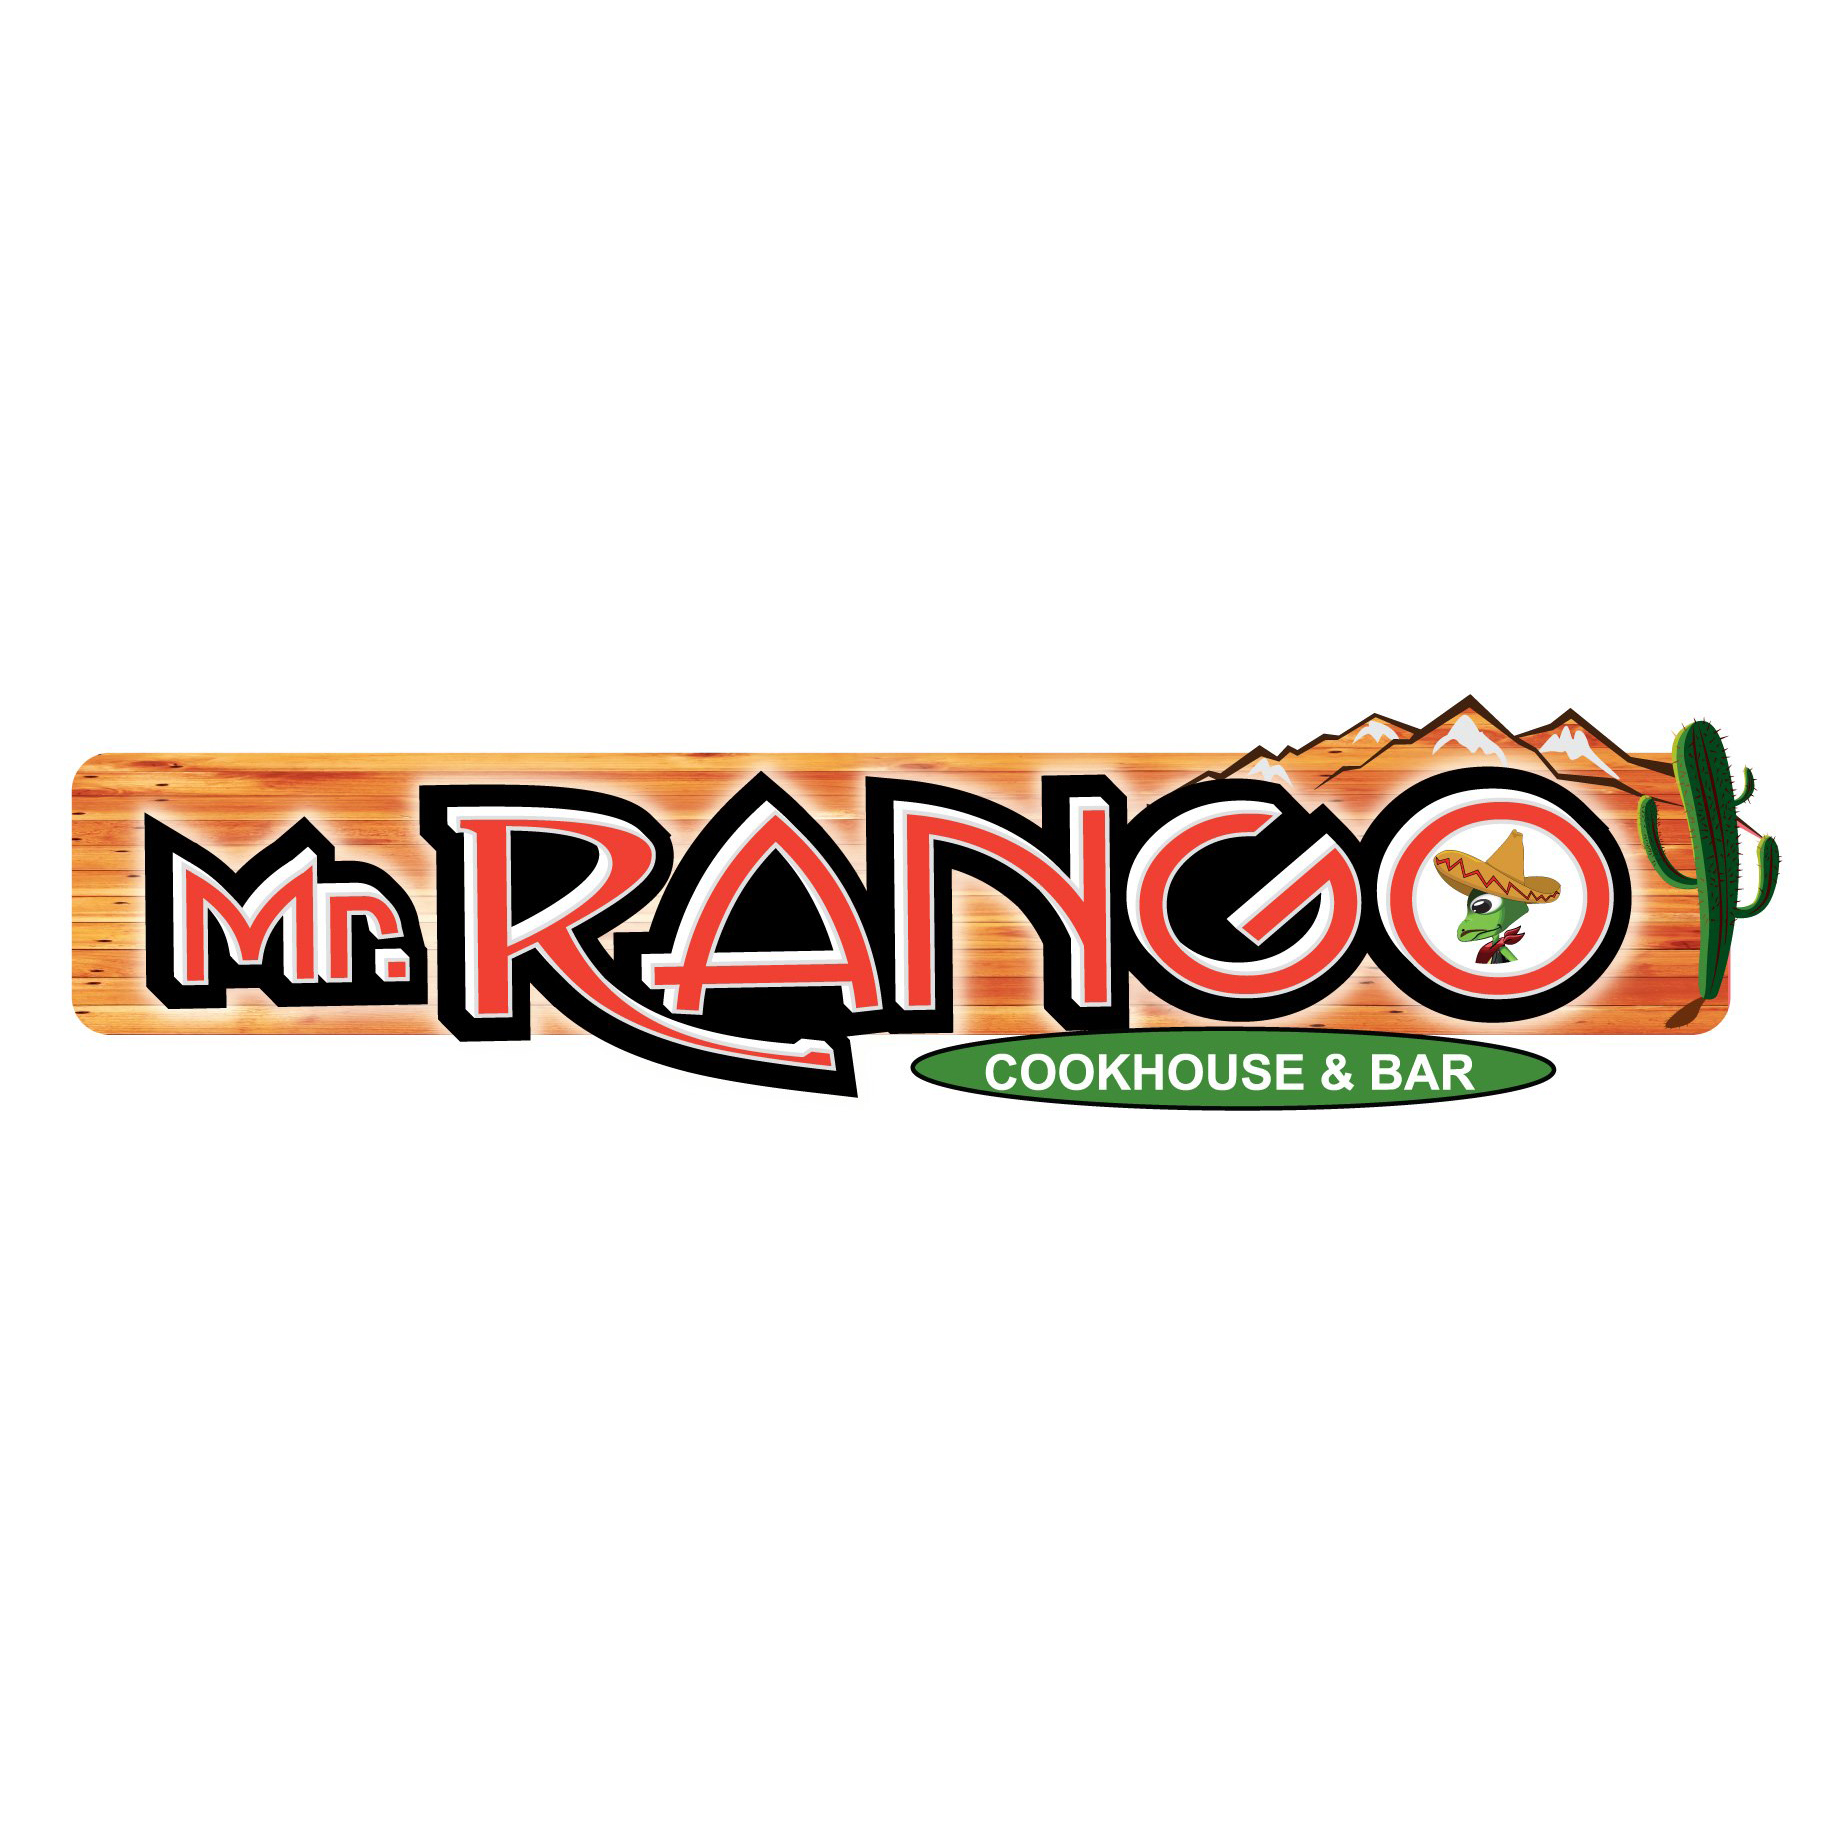 Mr. Rango